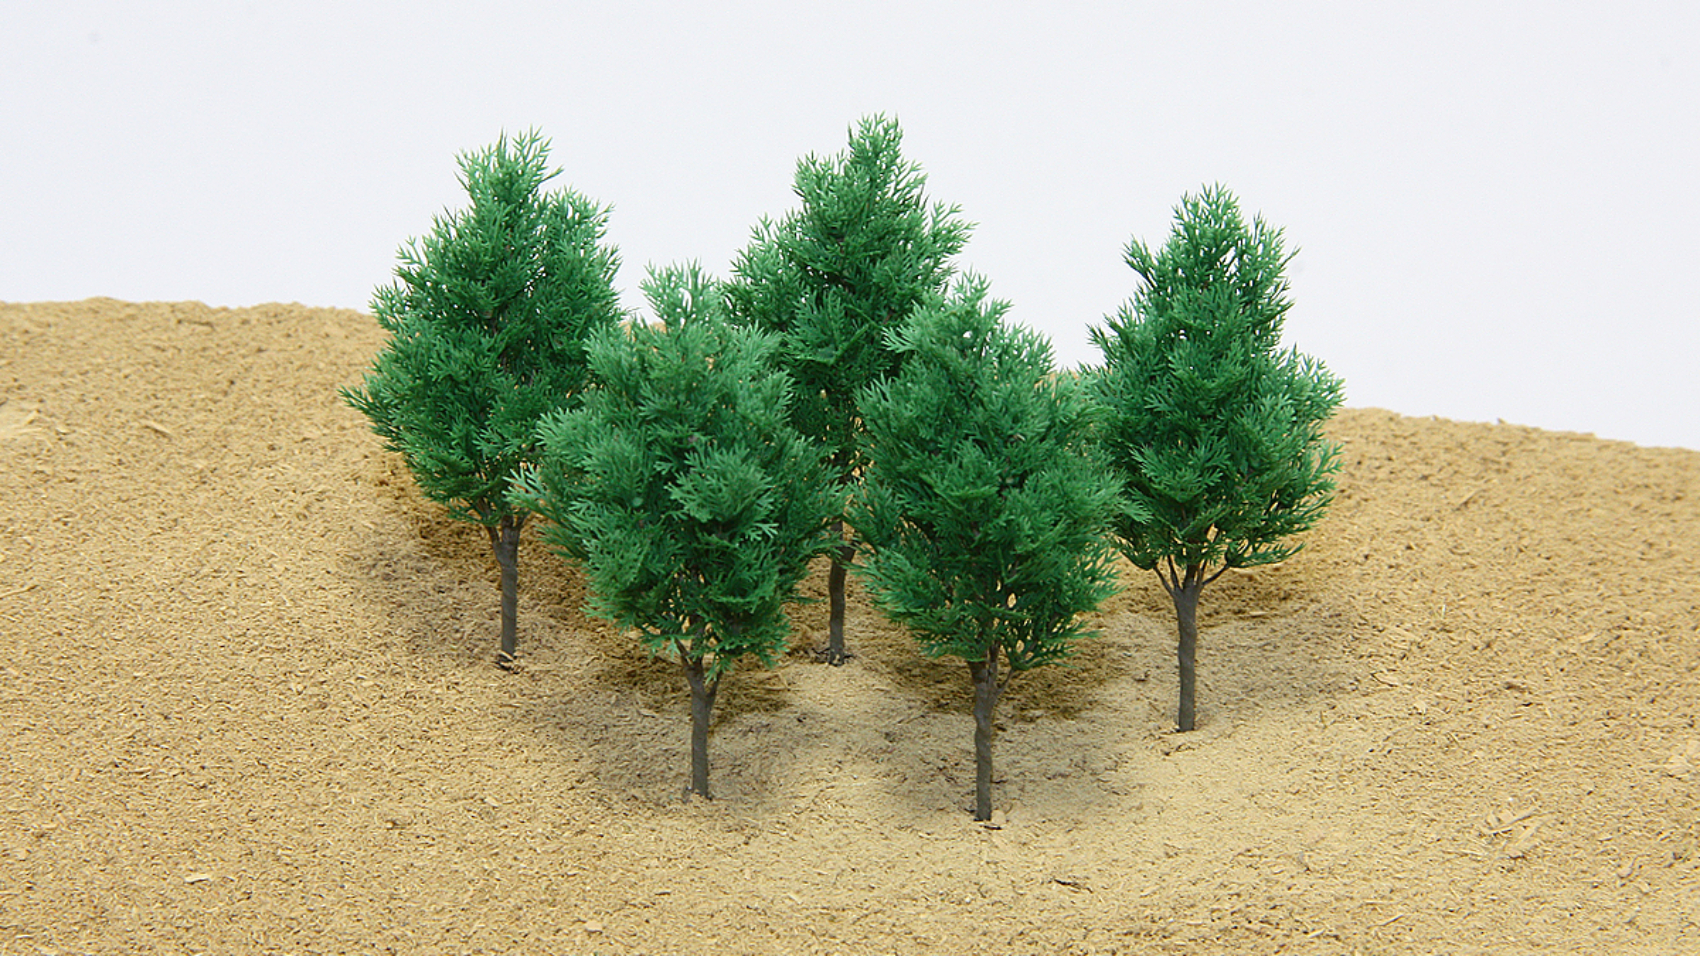 ジオラマリアルミニチュア樹木模型 針葉枝葉